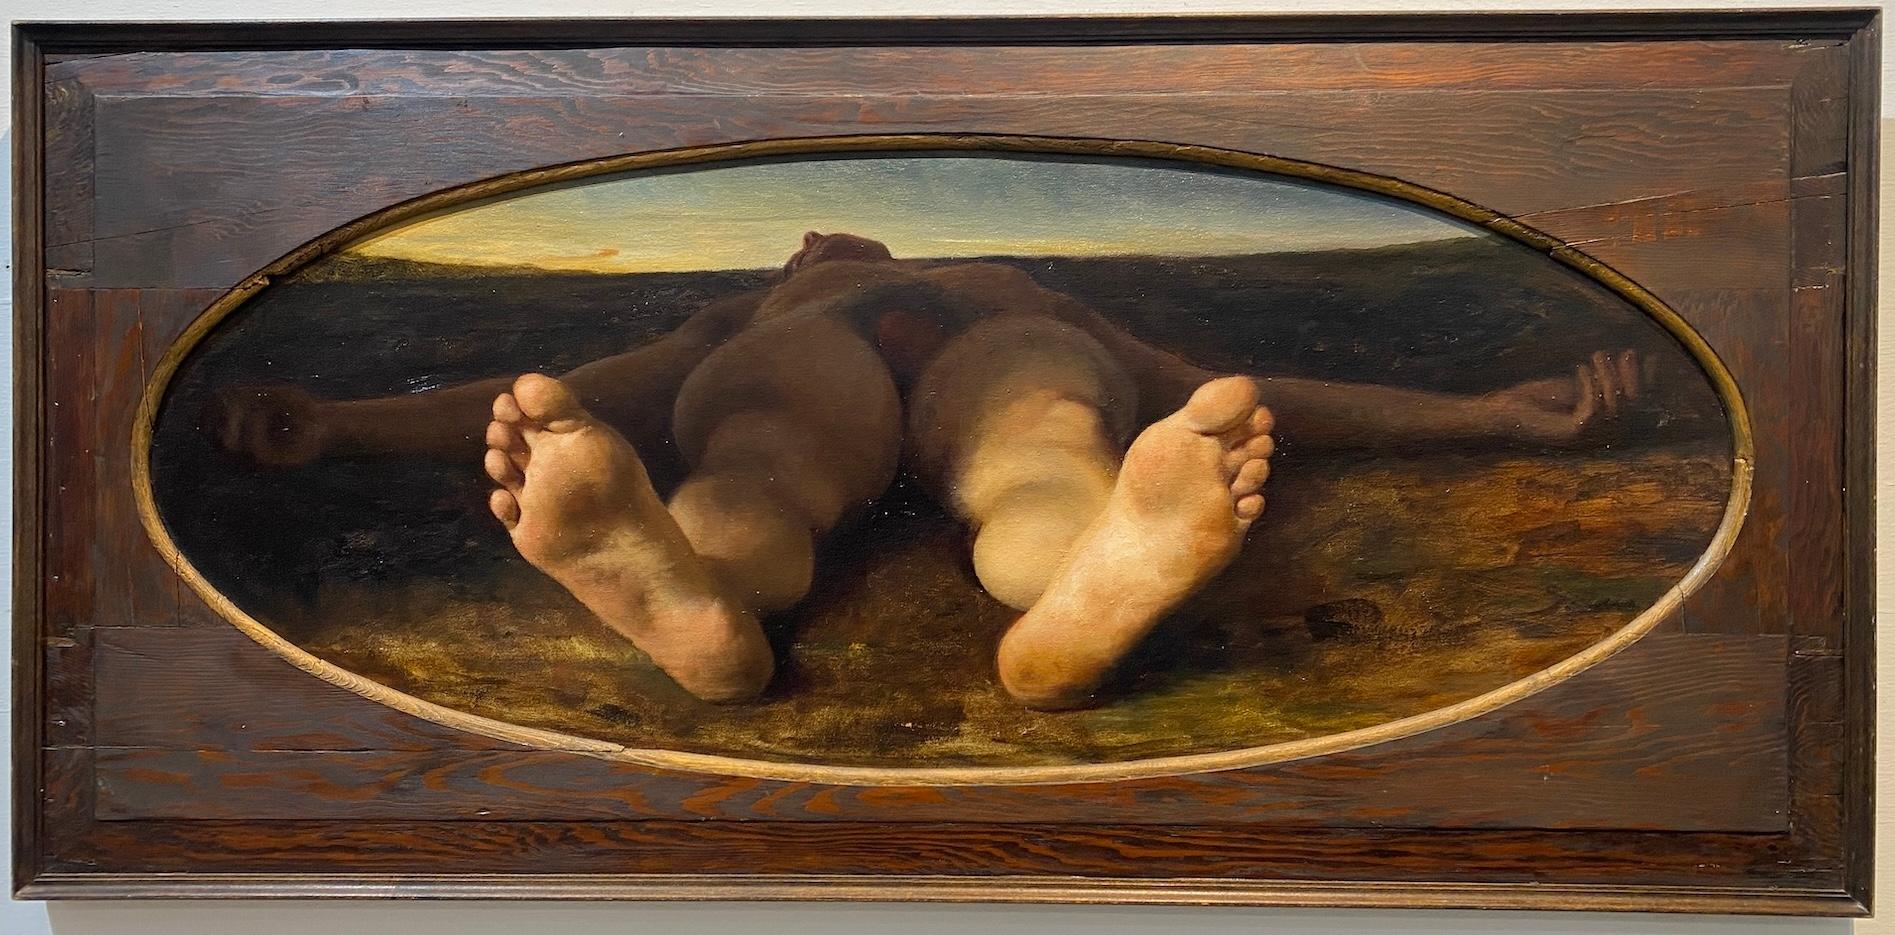 Nude Painting Anthony Ackrill - "Skylover" peinture à l'huile réaliste contemporaine de nu masculin en perspective.